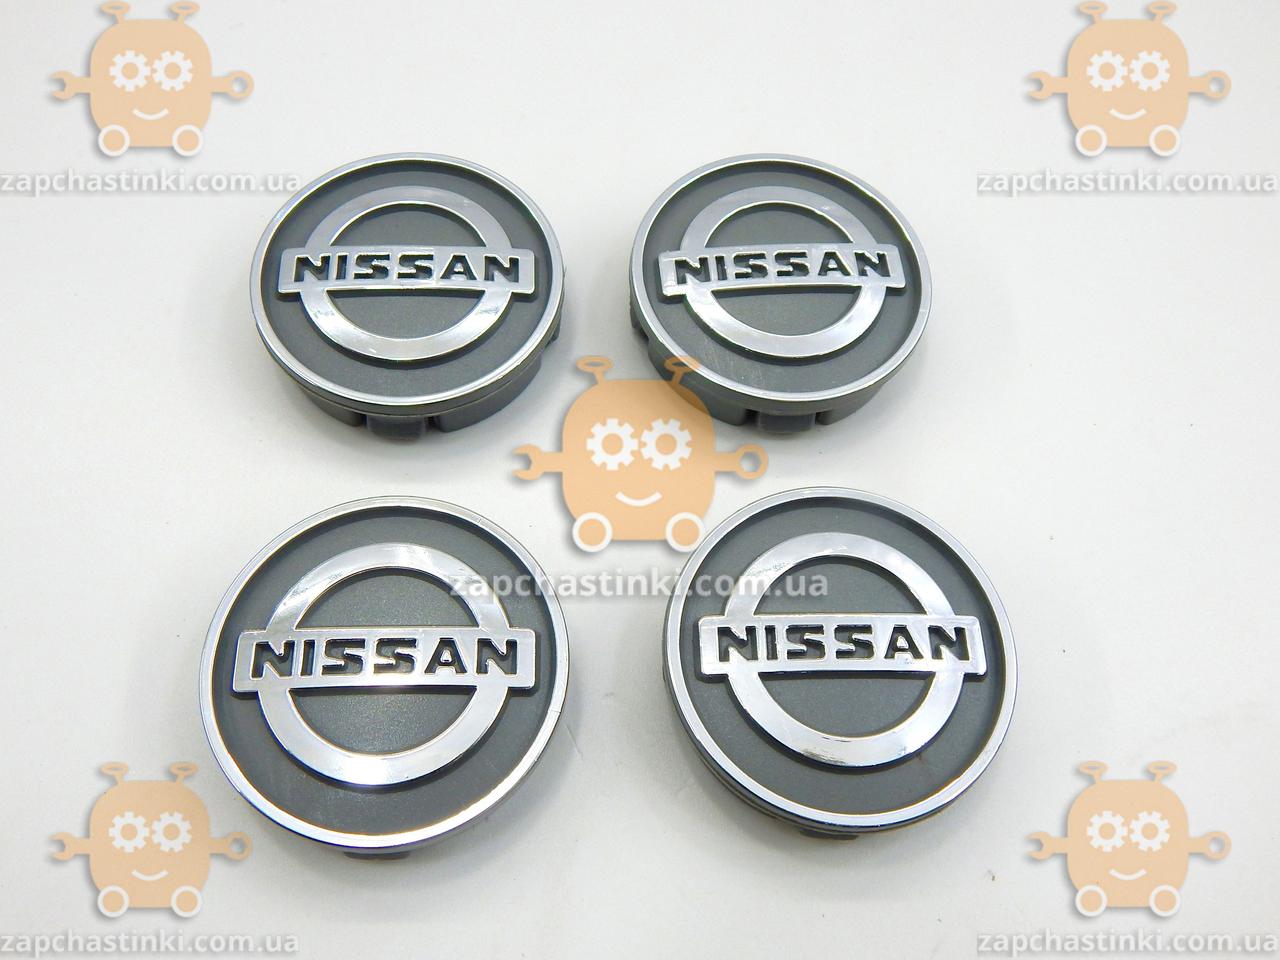 Емблема колеса NISSAN (4 шт.) СІРНІ пластик (ковпачки колеса для титанів) (діаметр ф60 мм) 171103